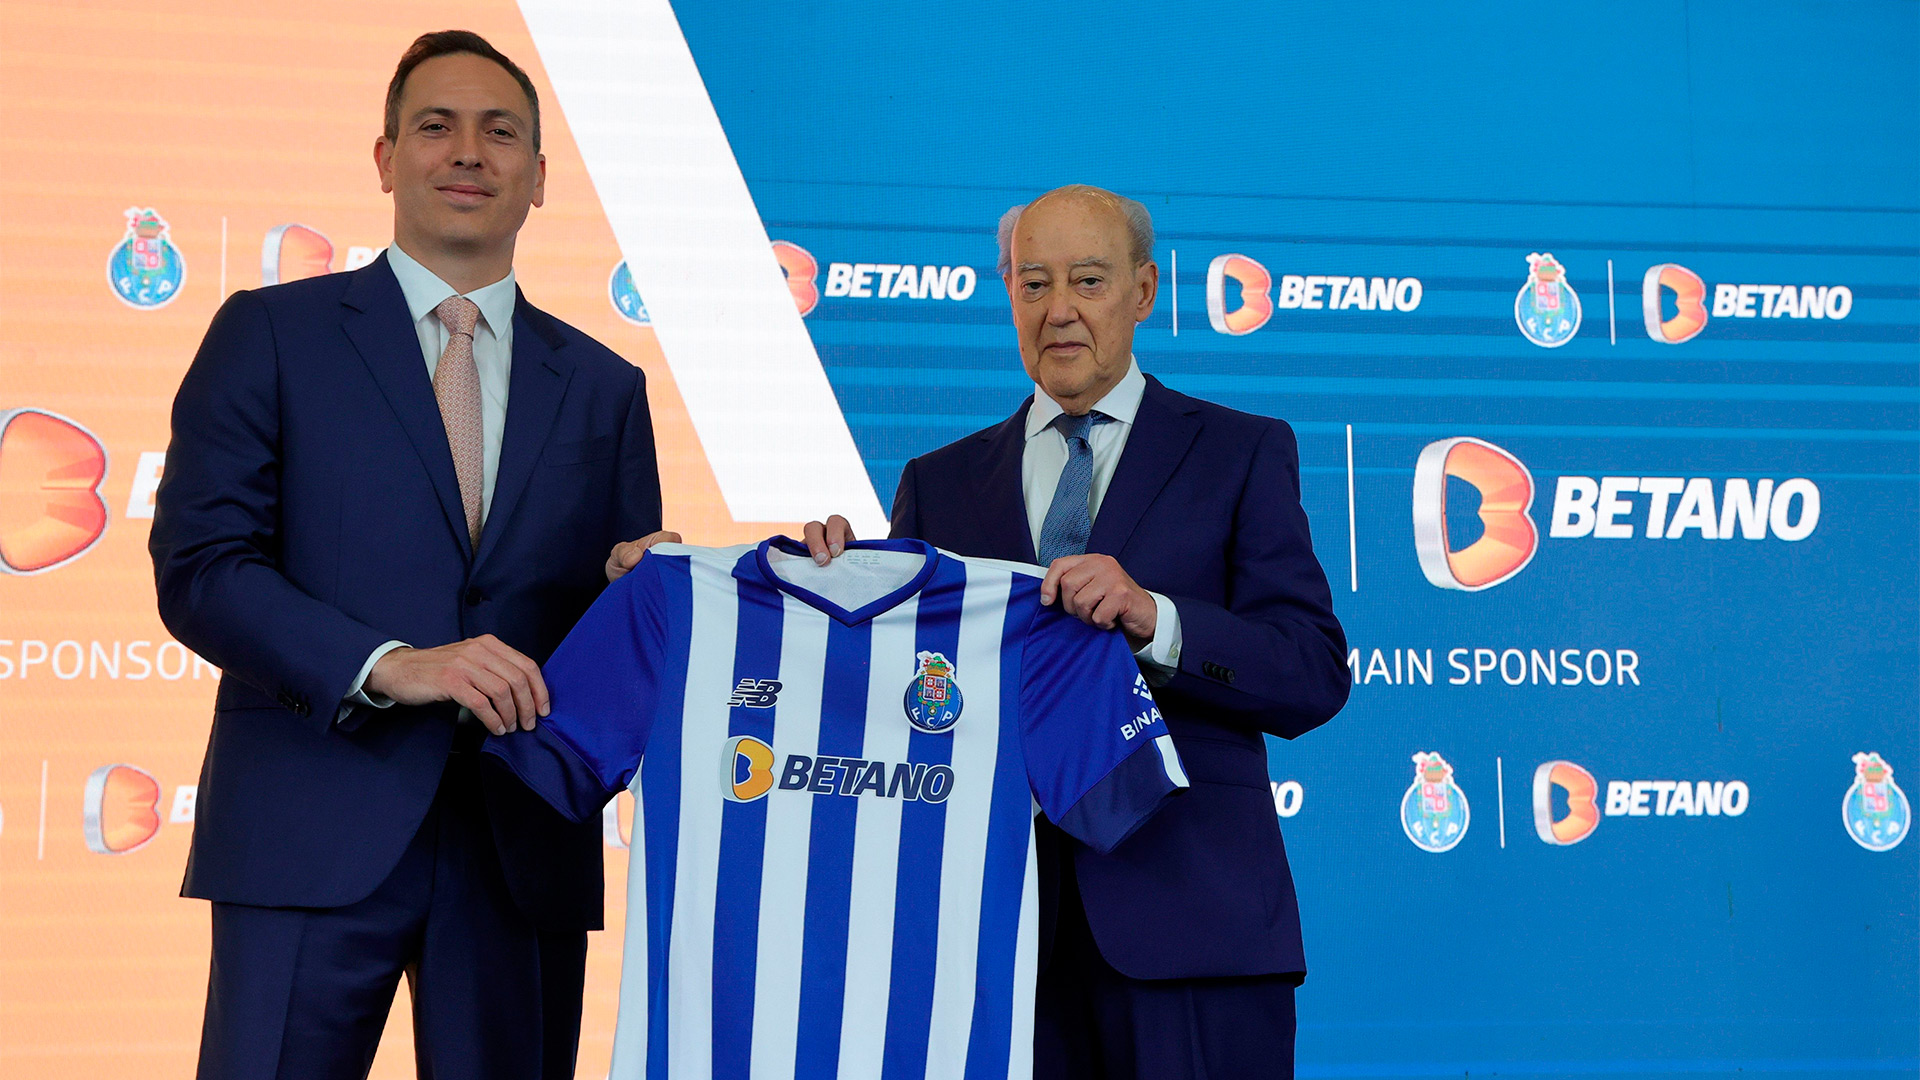 Operador de apostas Betano será o principal patrocinador do FC Porto durante 4 épocas